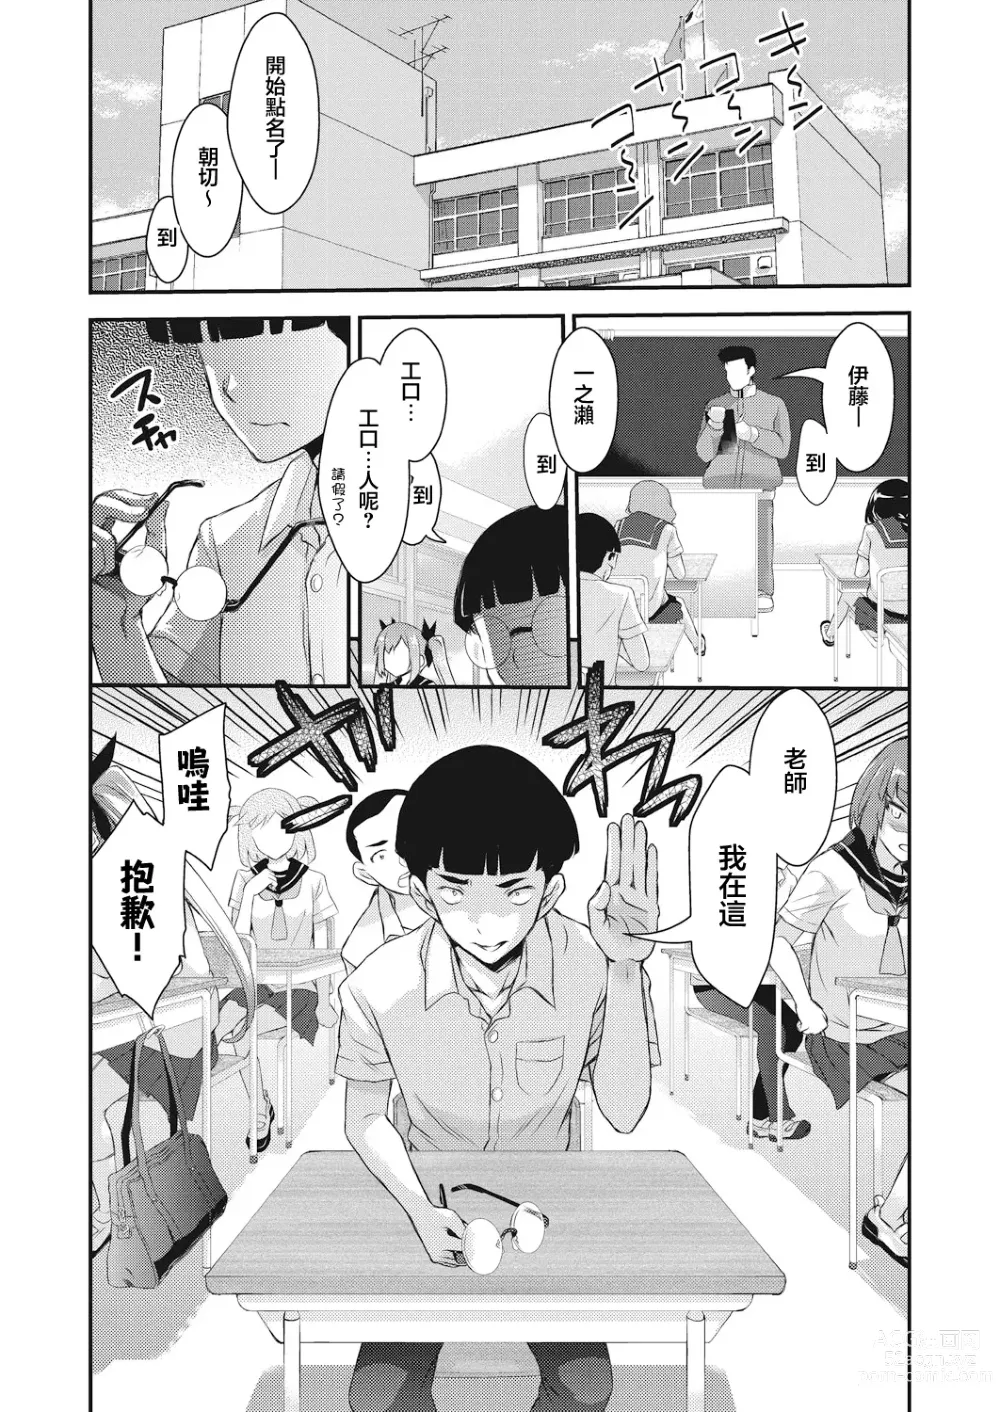 Page 2 of manga BOCCHI NO ZAMMA